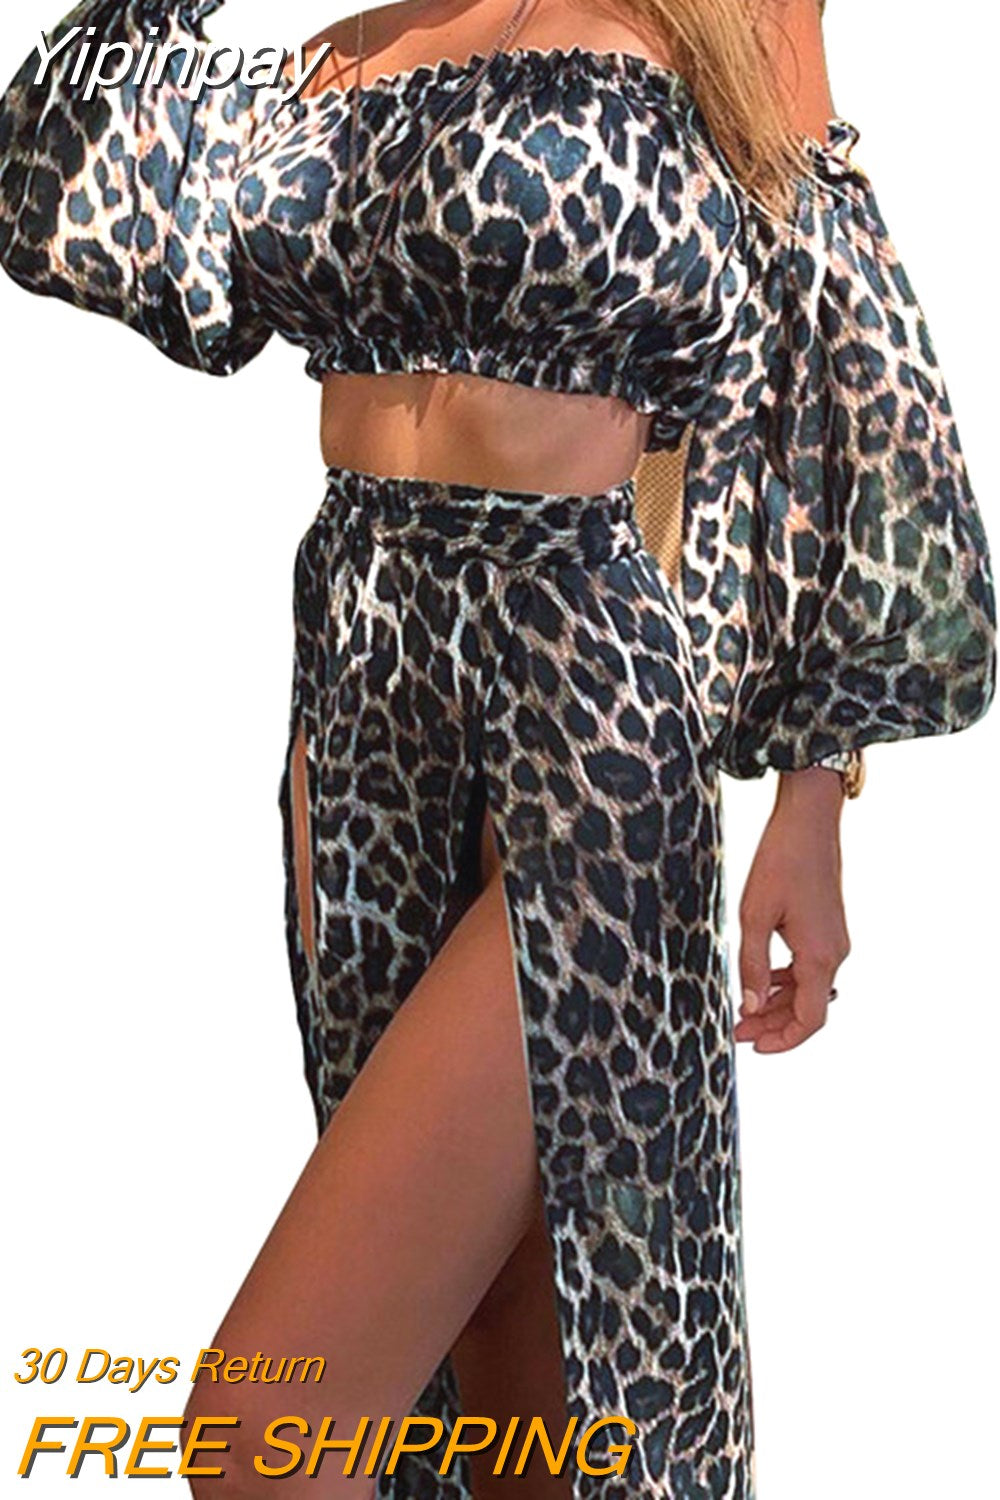 Yipinpay Sexy Skirt Sets Summer Fall Vacation Women Temperament Leopard Strapless Puff Sleeve Crop Top Split Skirt Women's Suits